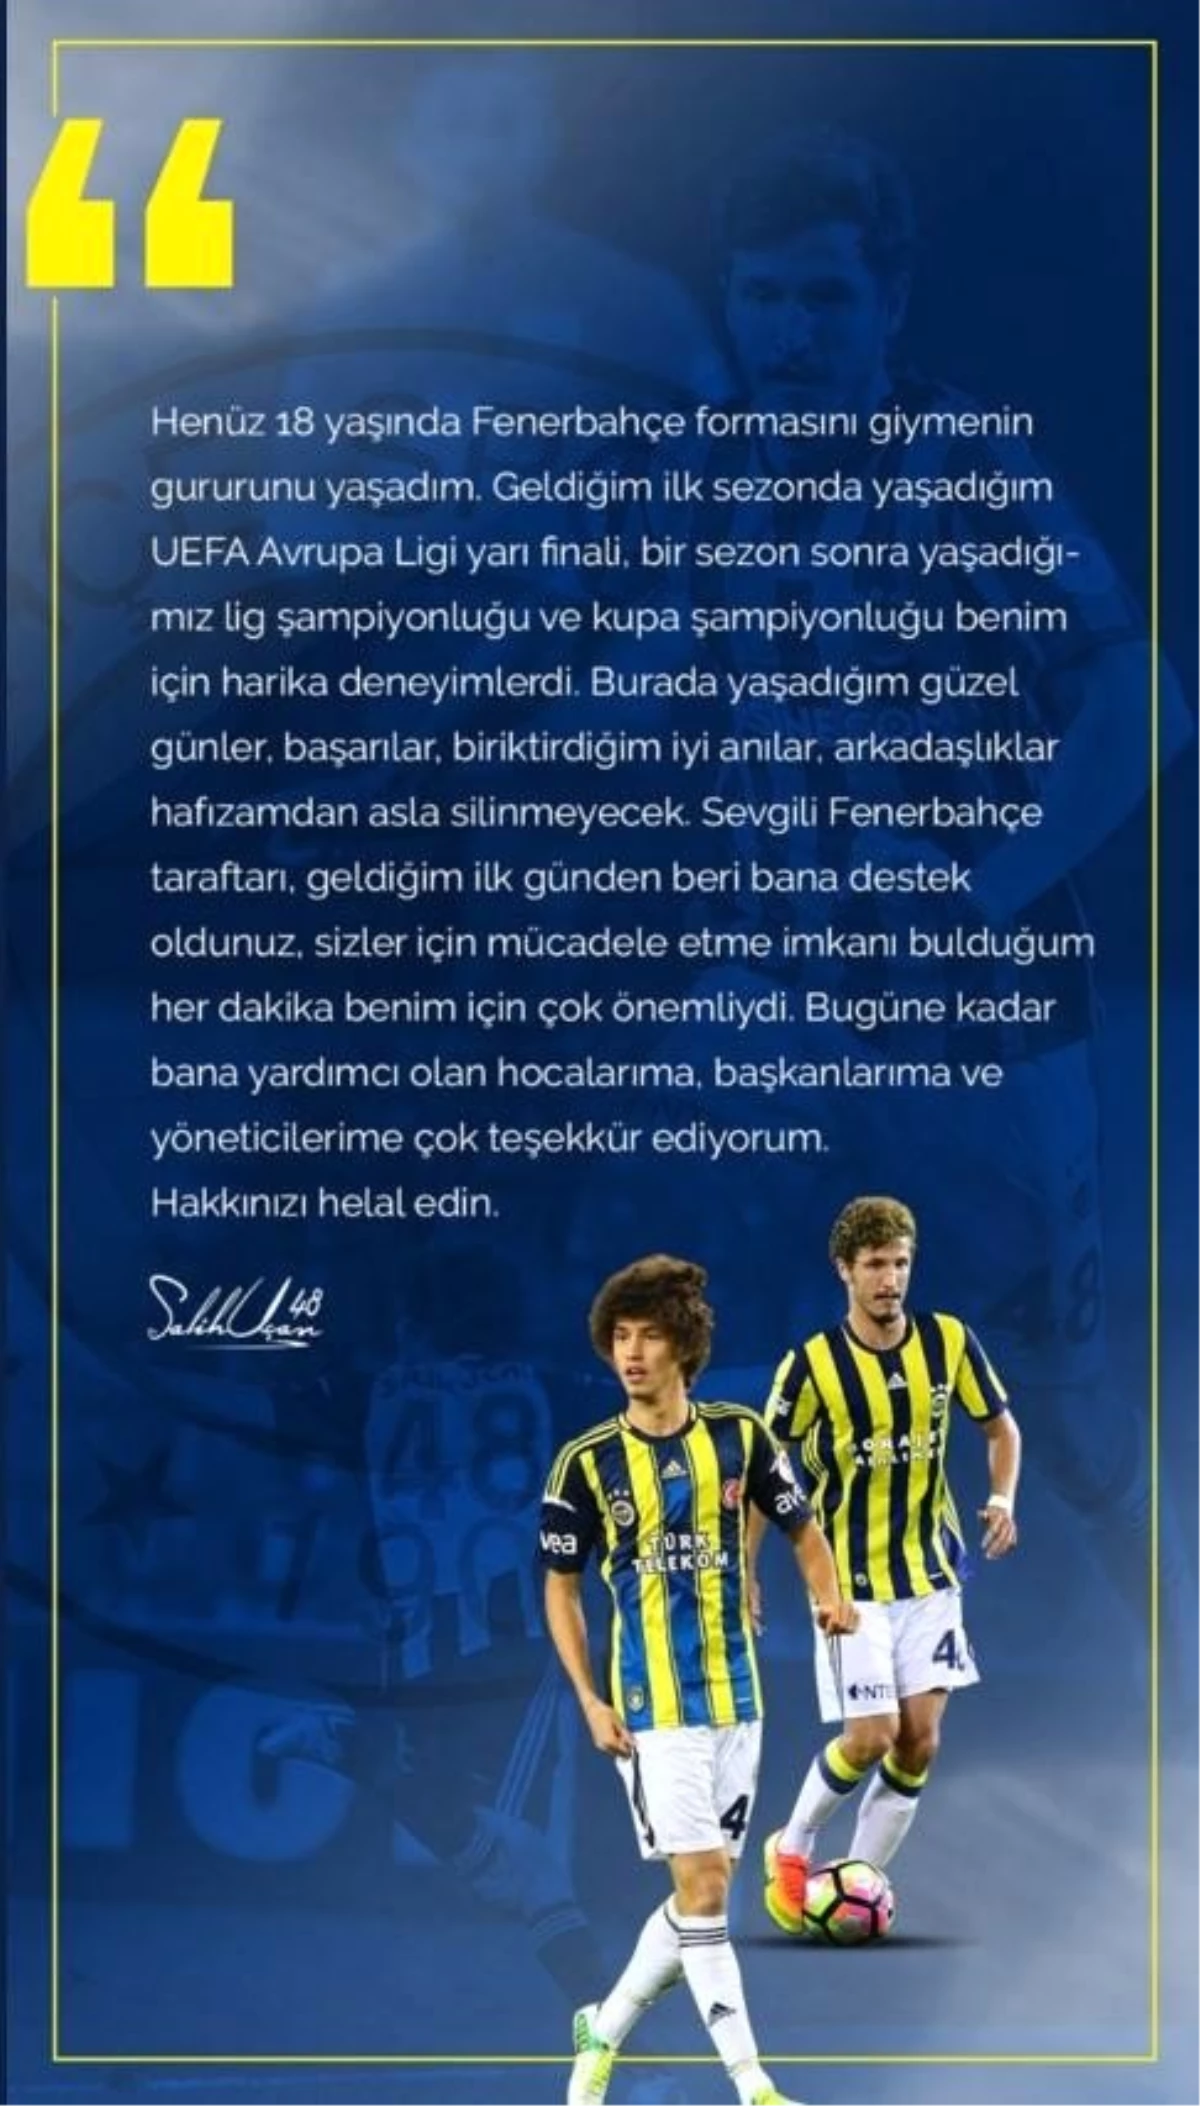 Salih Uçan Fenerbahçe'ye veda etti - Spor